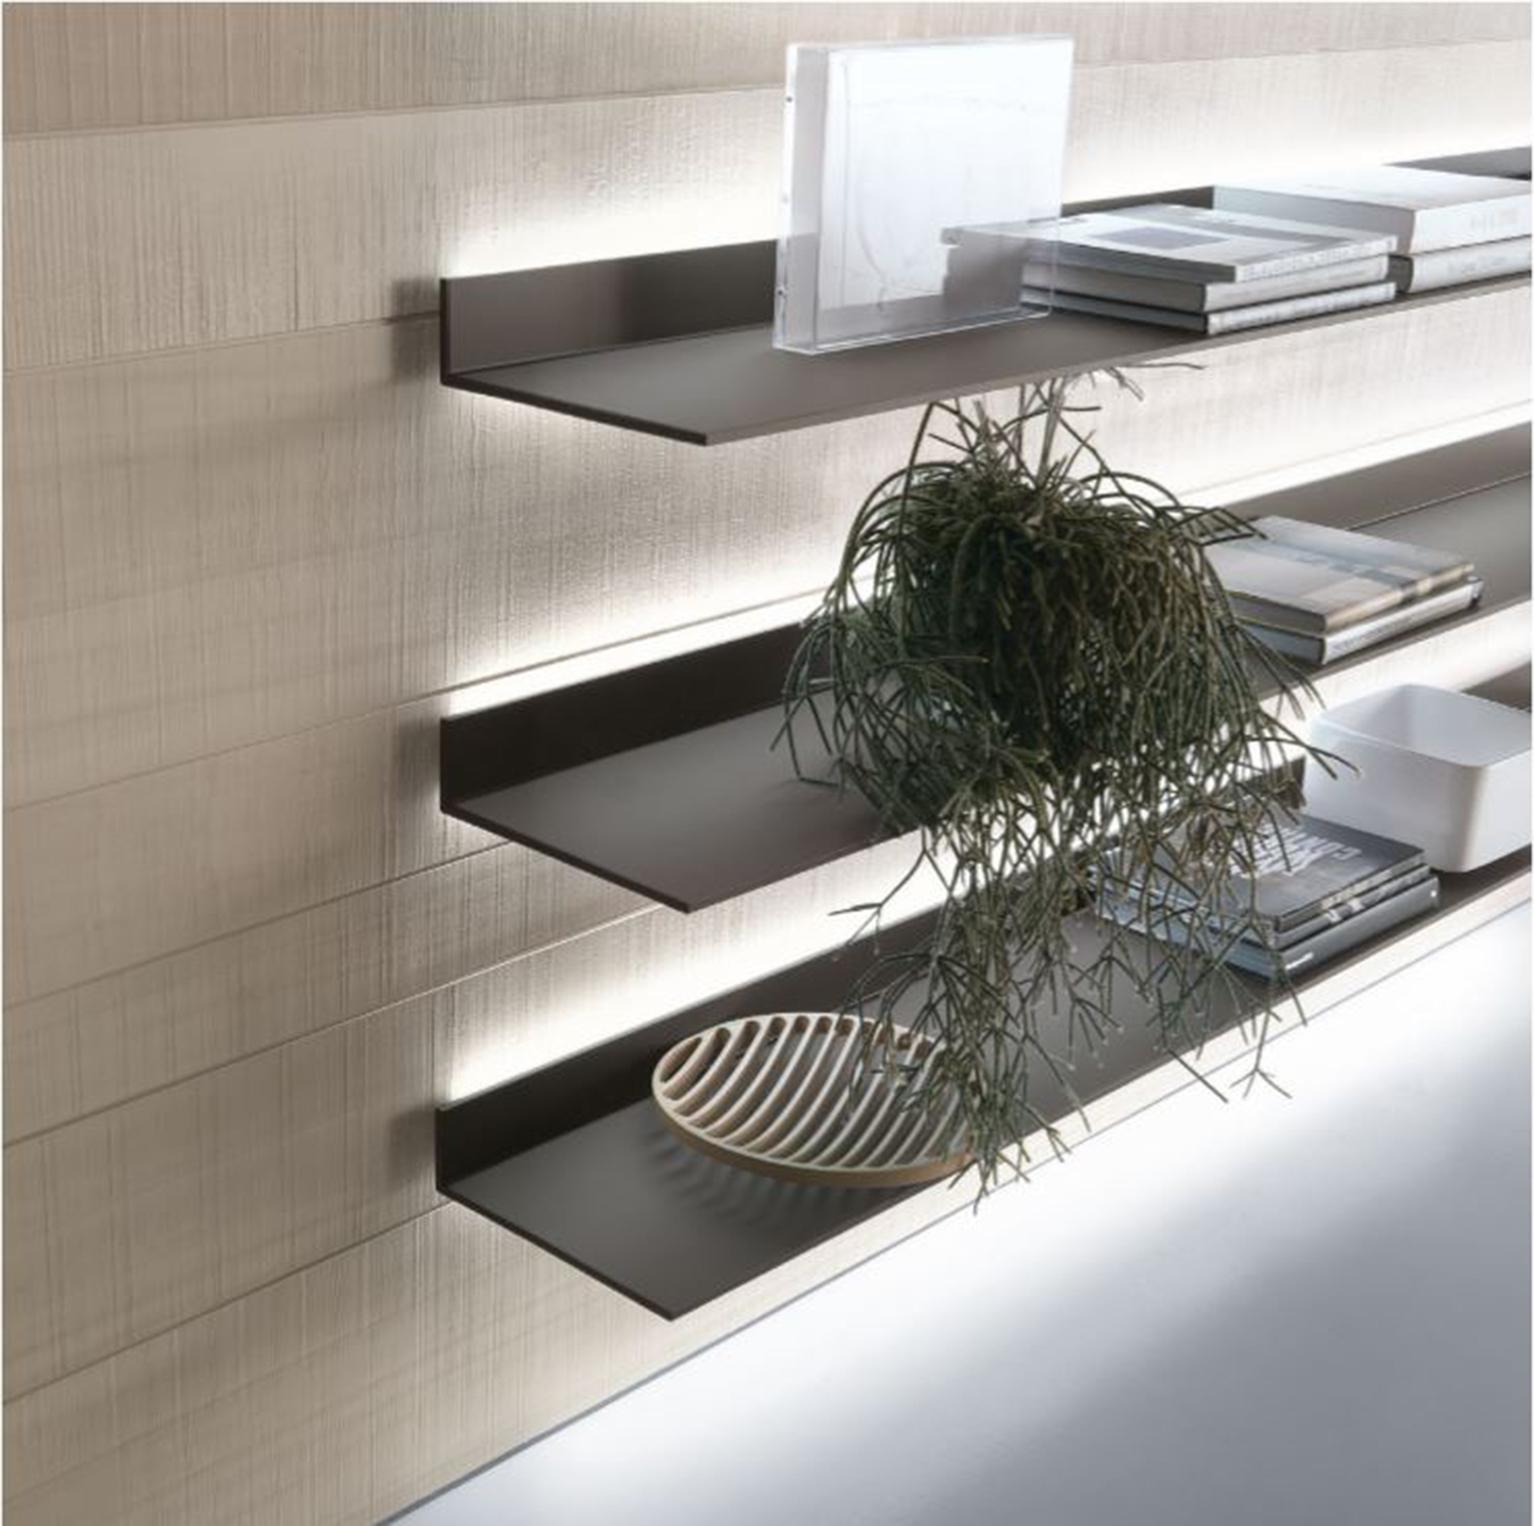 L'étagère EOS, conçue par Giuseppe Bavuso, est un système innovant d'étagères murales. D'une épaisseur de seulement 8 mm, le design EOS associe un plateau en verre laqué à un cadre en aluminium laqué. Le système de fixation murale garantit une